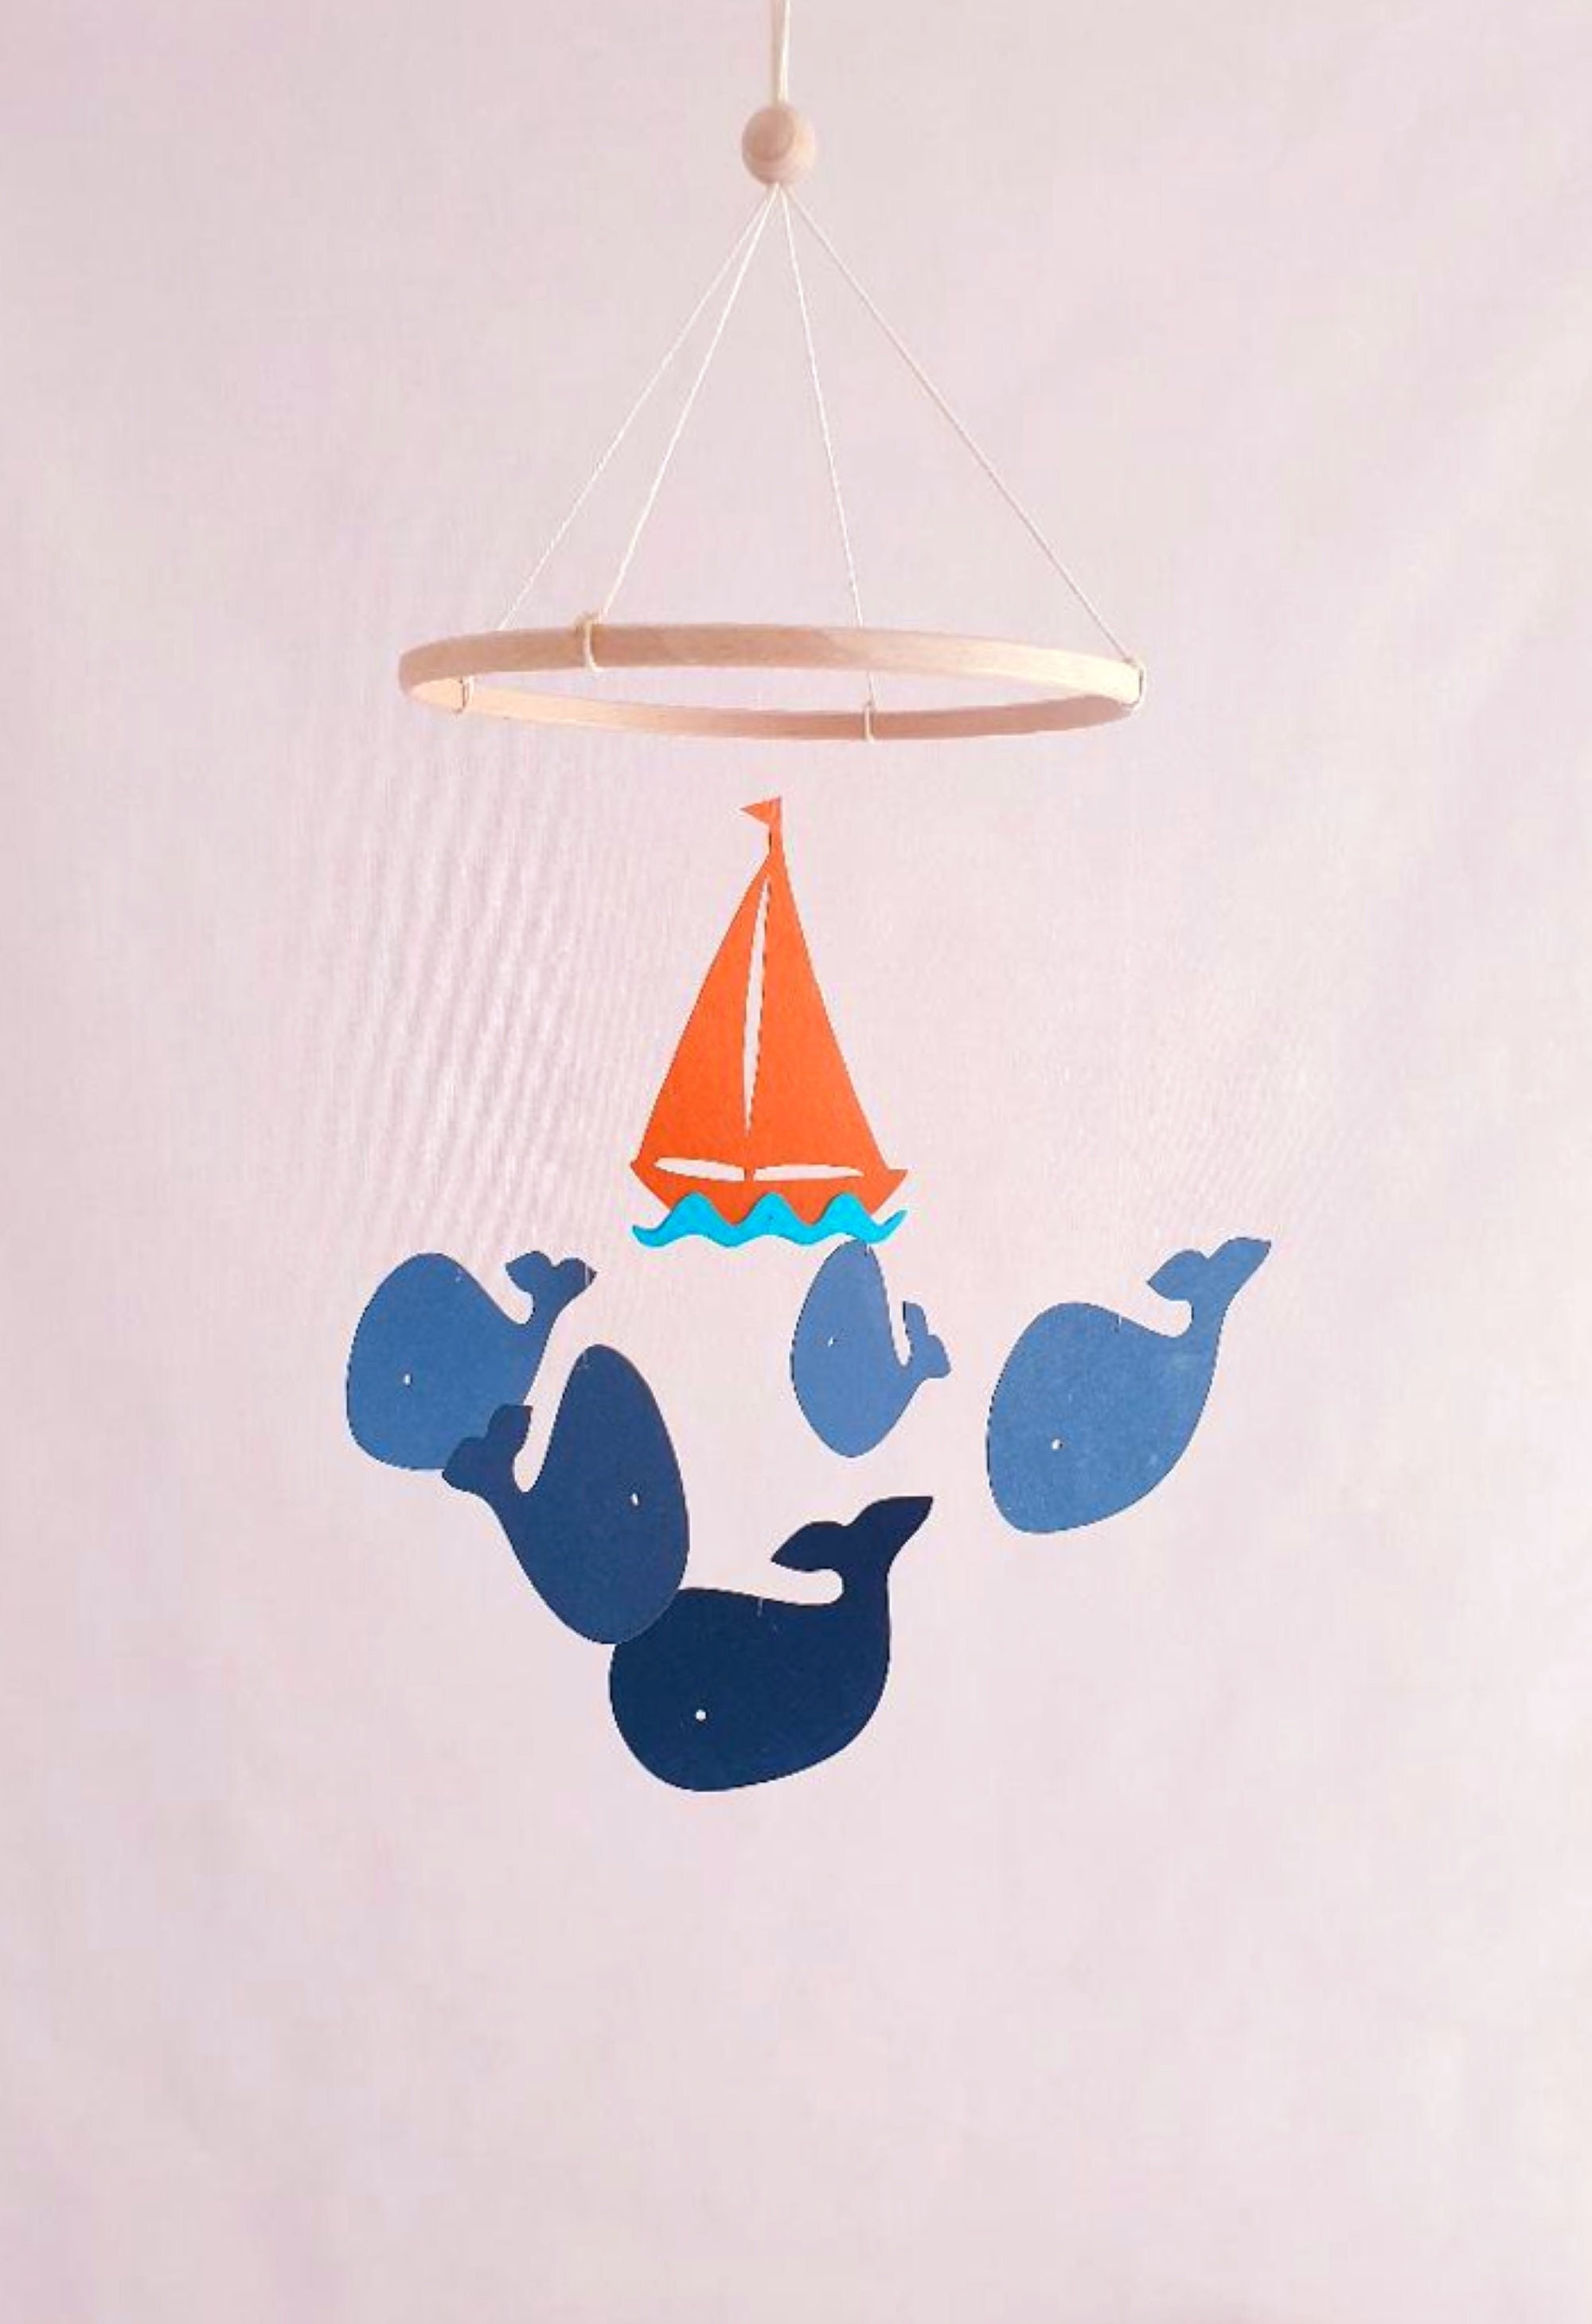 mobile pour bébé 5 baleines et bateau sur cercle en bois 20x45cm papier cartonné recyclé mobile berceau.